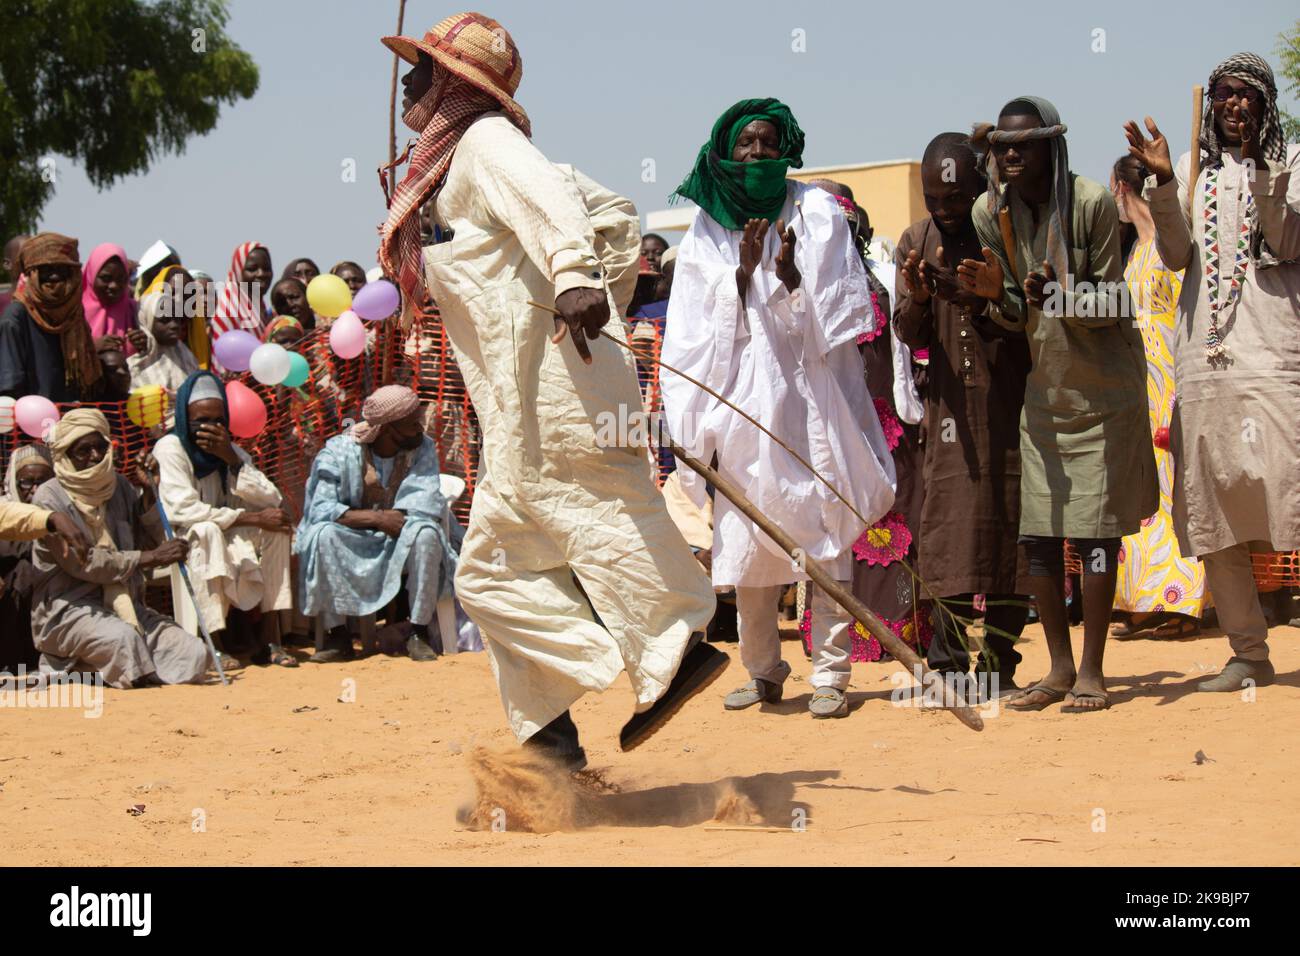 Tribù africane, Nigeria, Stato di Borno, città di Maiduguri. I membri della tribù dei Fulani sono tradizionalmente vestiti con una cerimonia di danza tribale, vestiti tradizionalmente Foto Stock